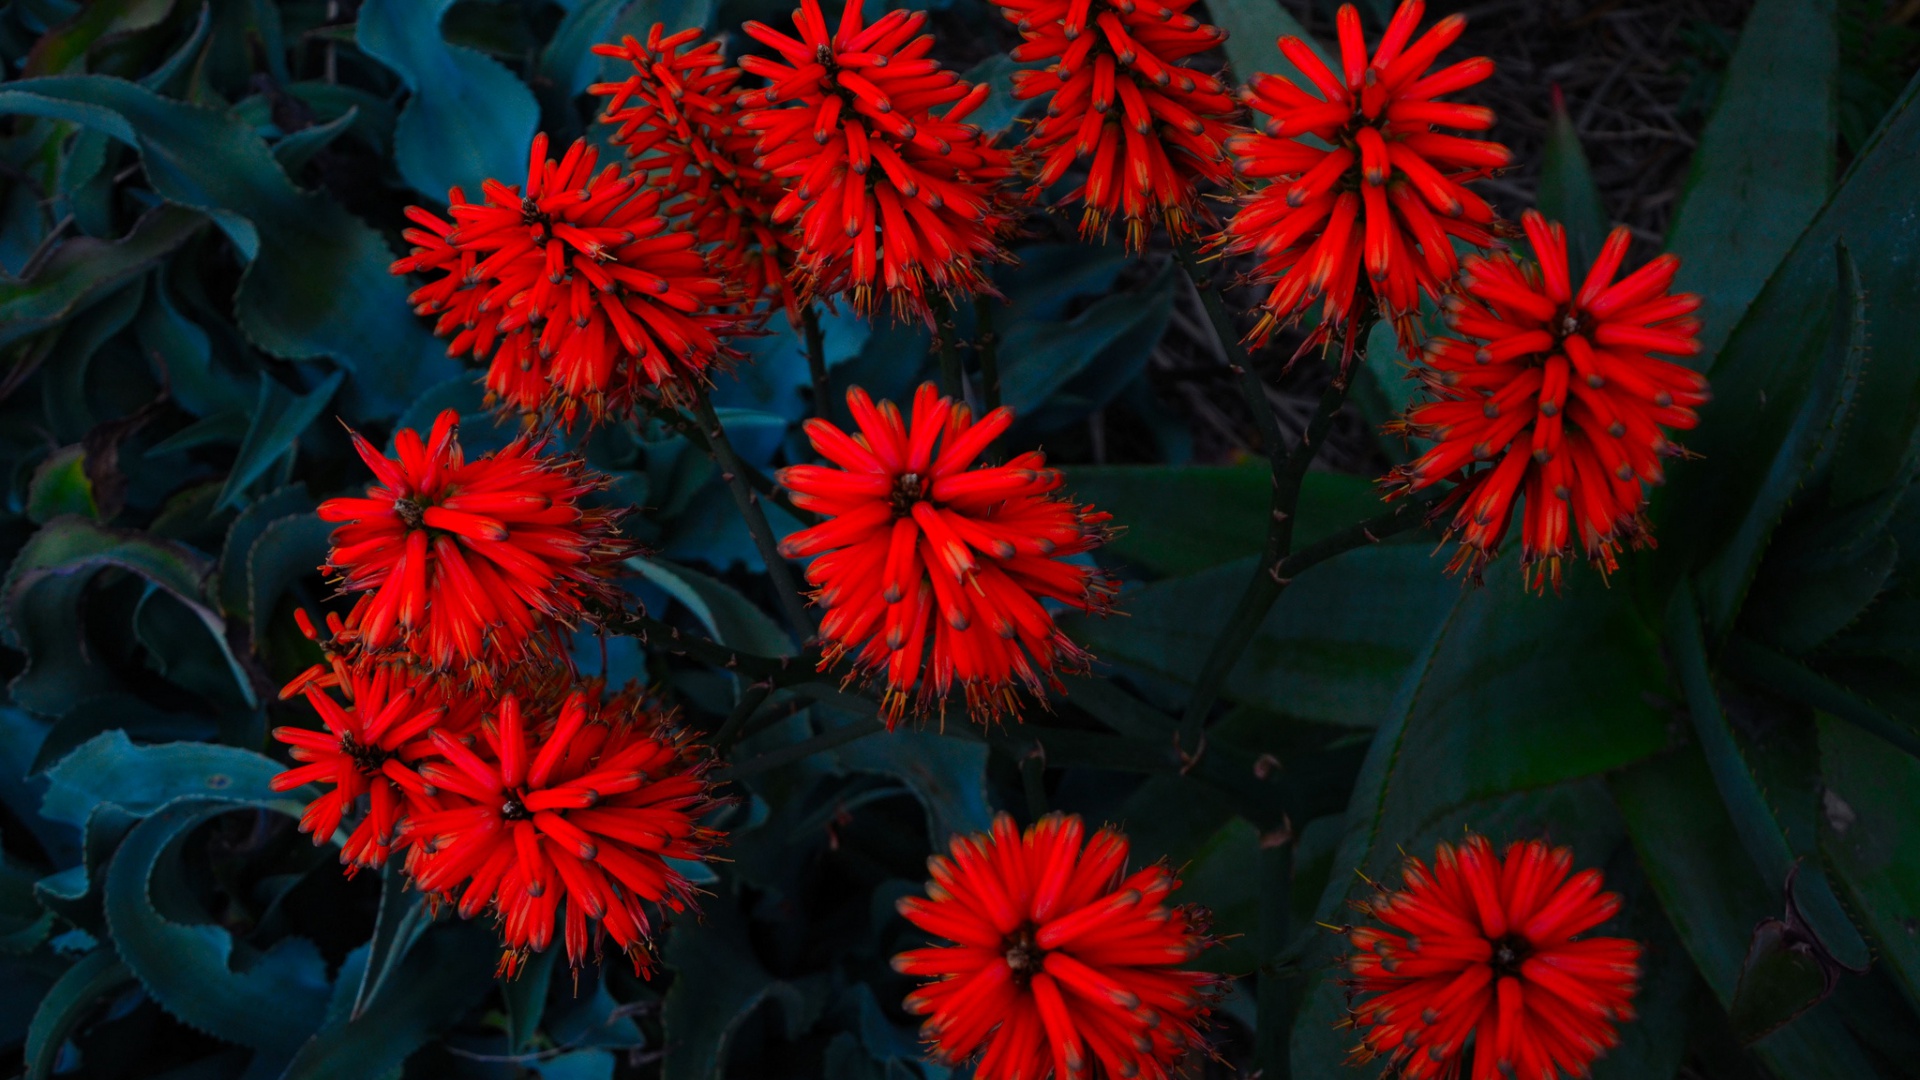 والپیپر حیرت انگیز و زیبا از گل های قرمز رنگ 